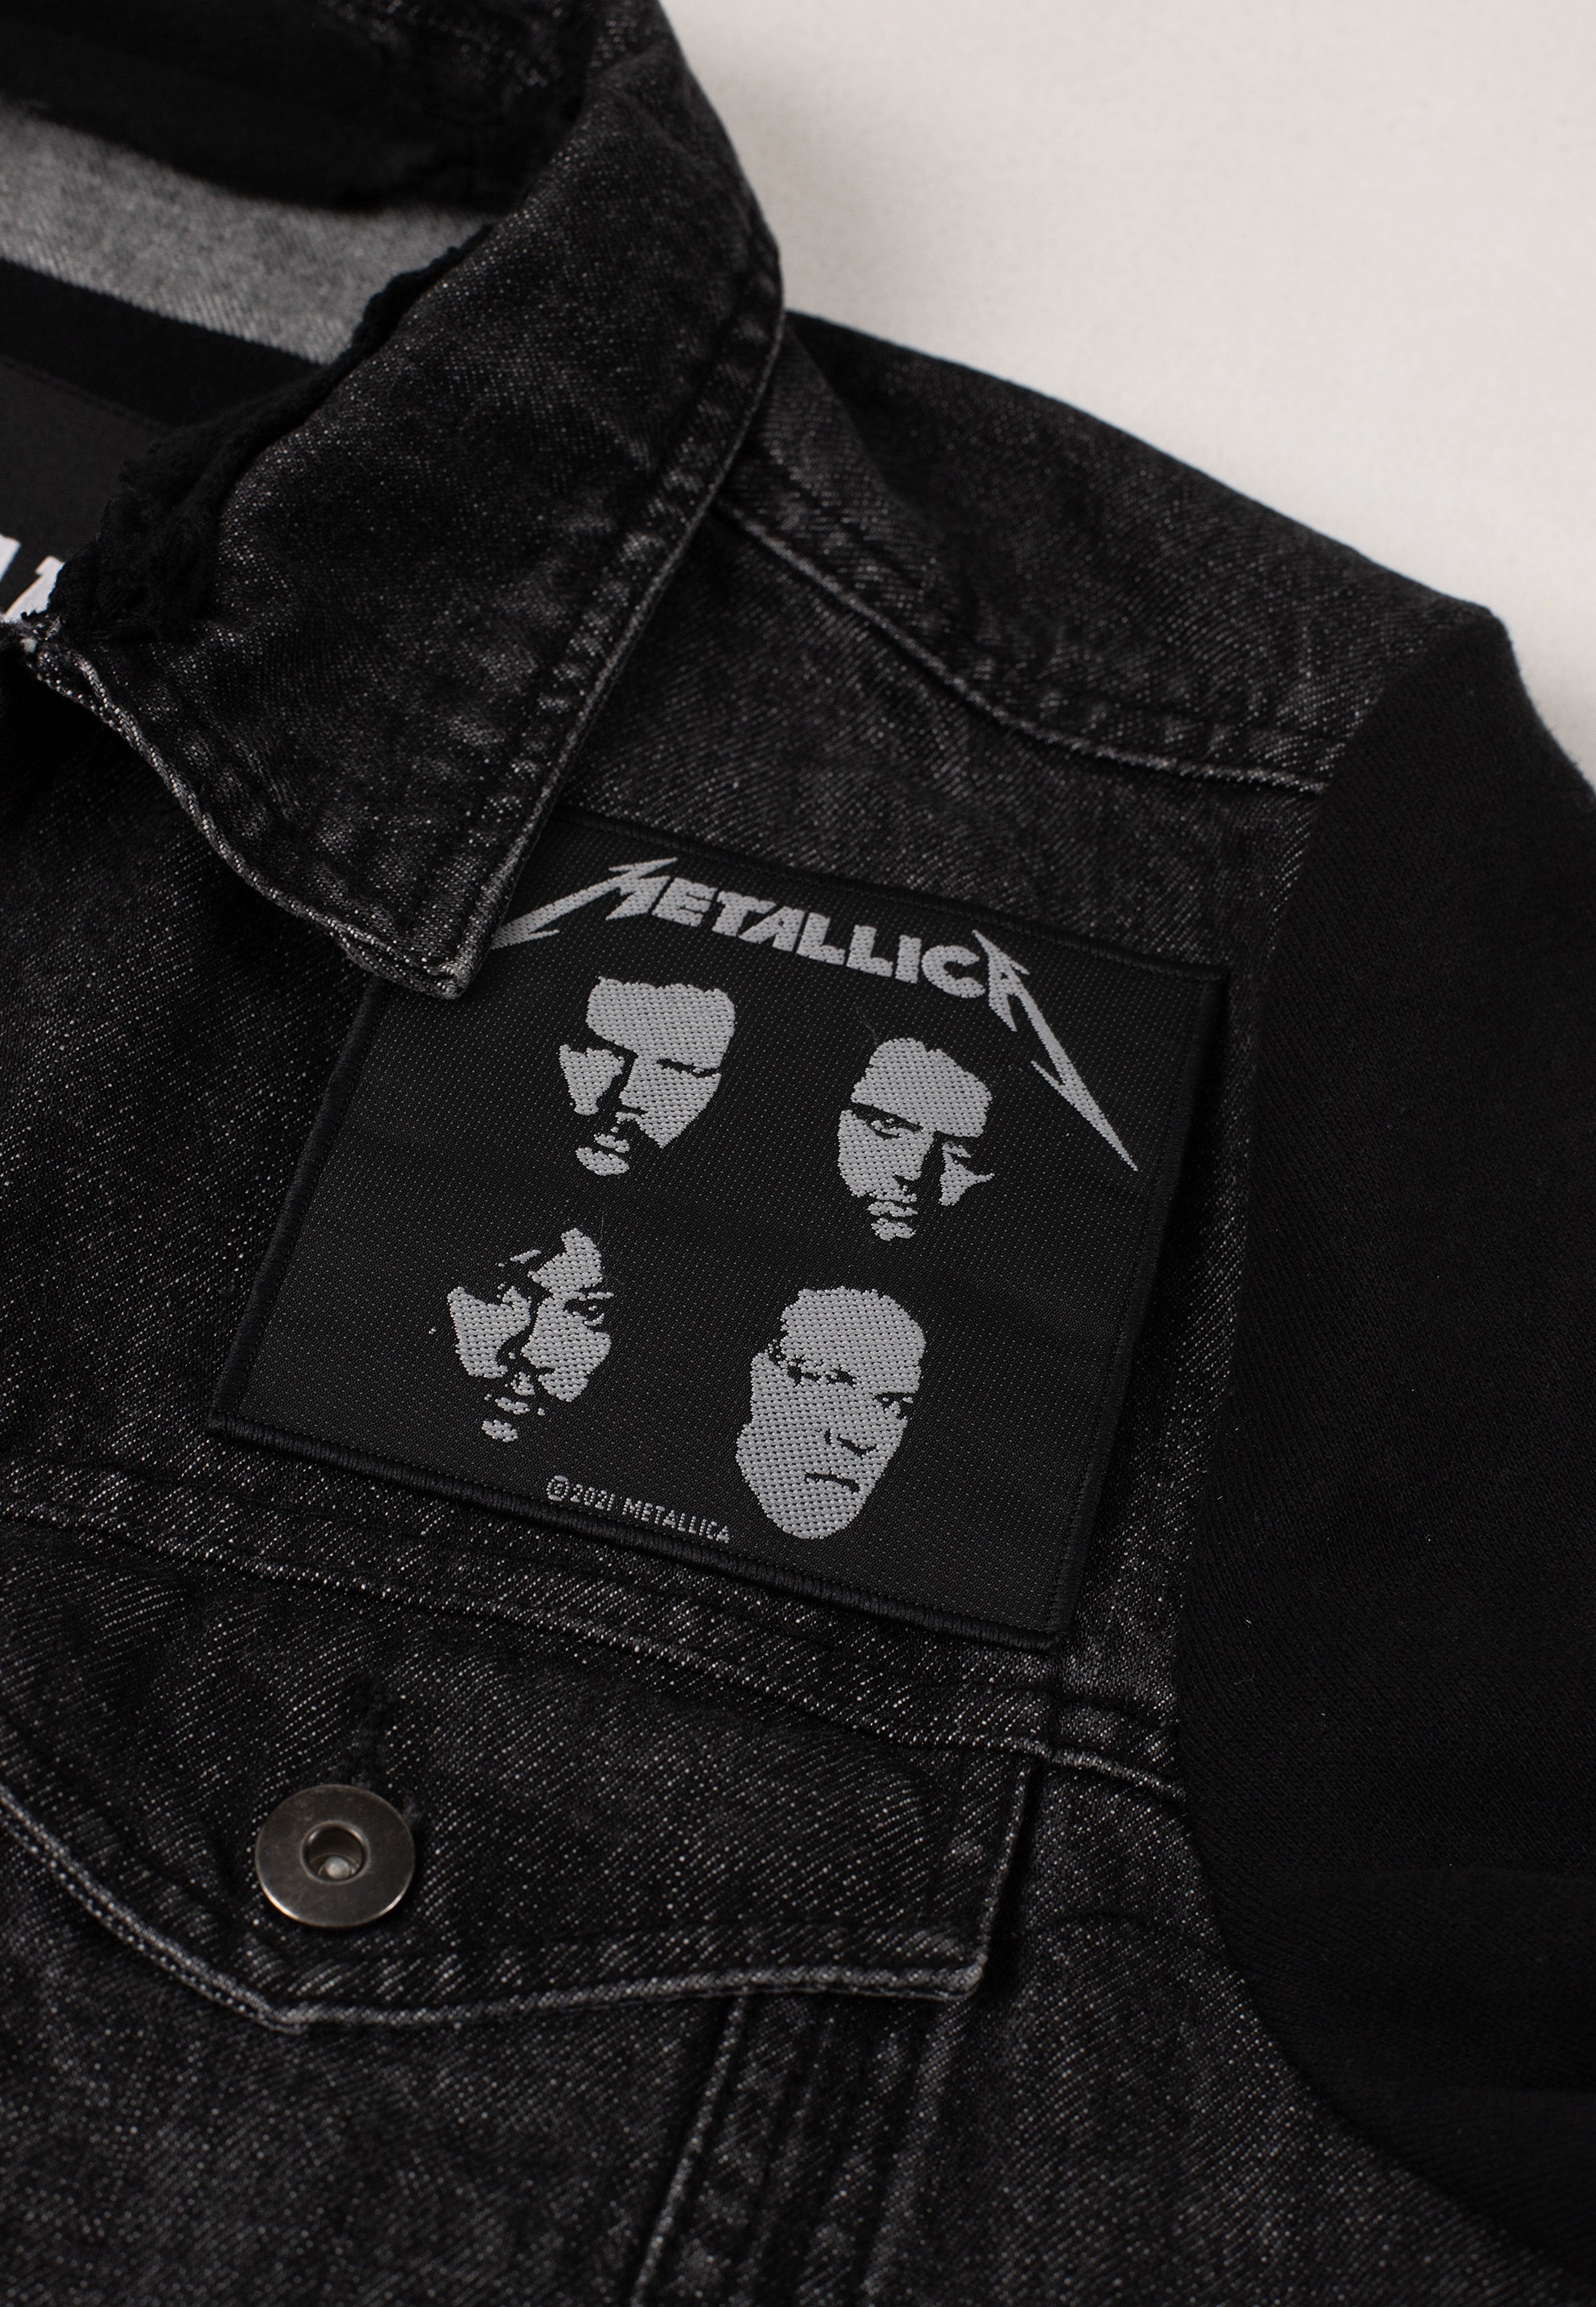 Metallica - Black Album - Patch